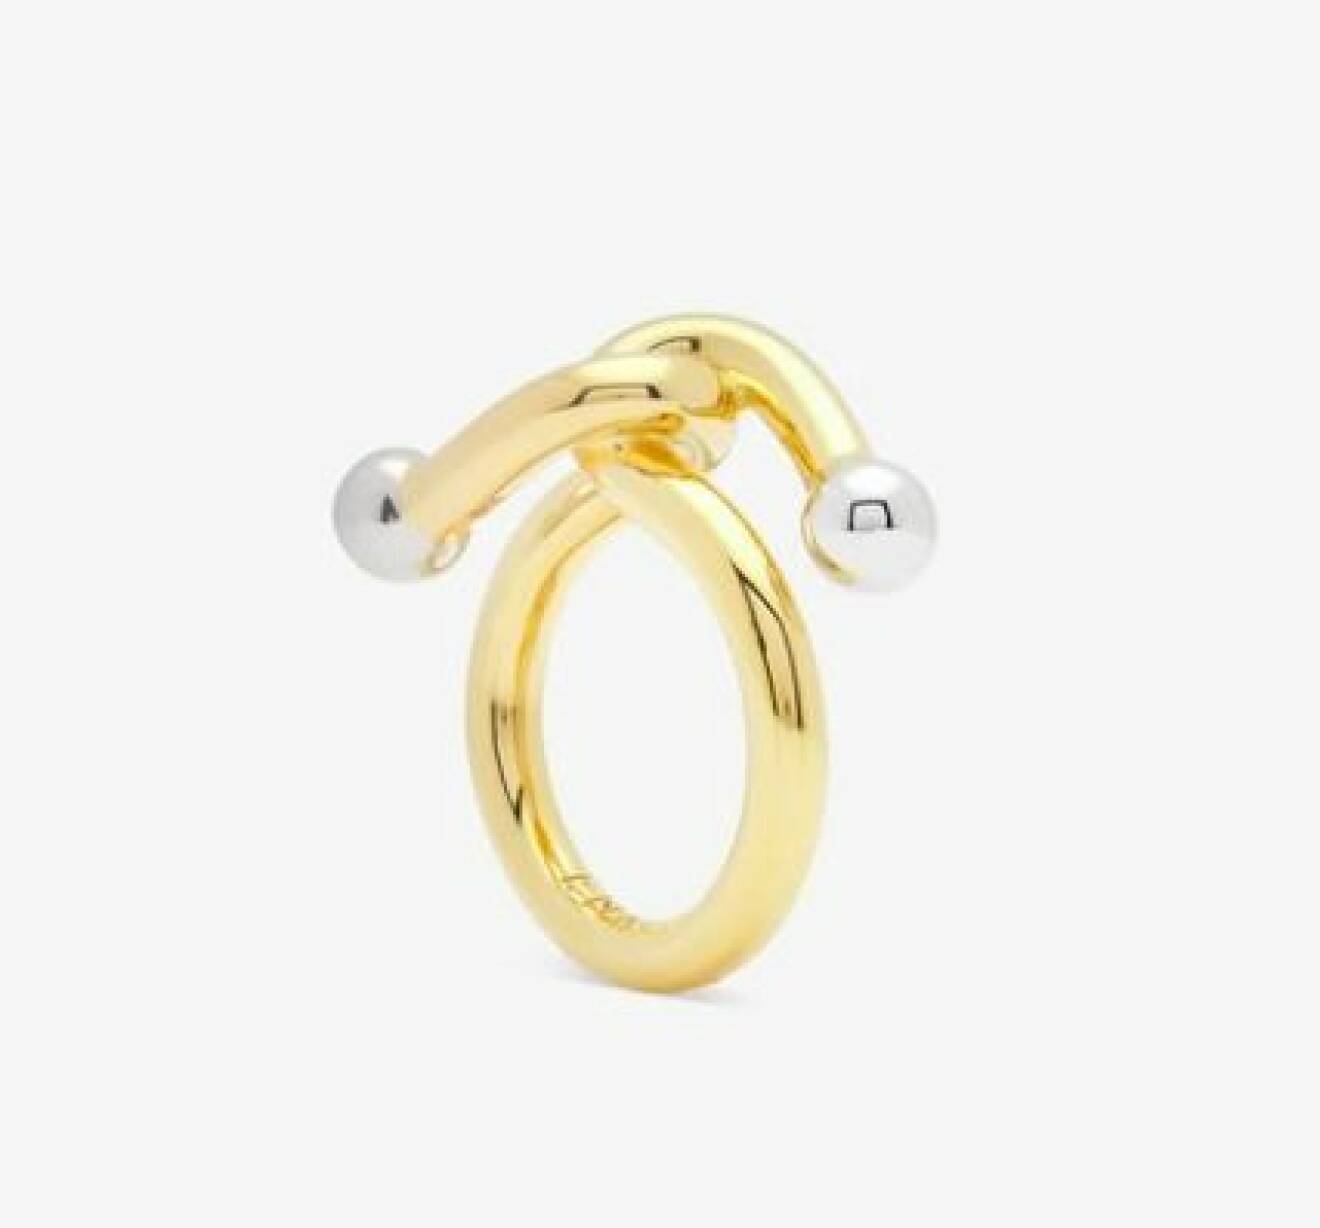 Guldfärgad ring som ser ut att vara ihopknuten, med silverfärgade kulor i ändarna. Ring från Ennui Atelier.